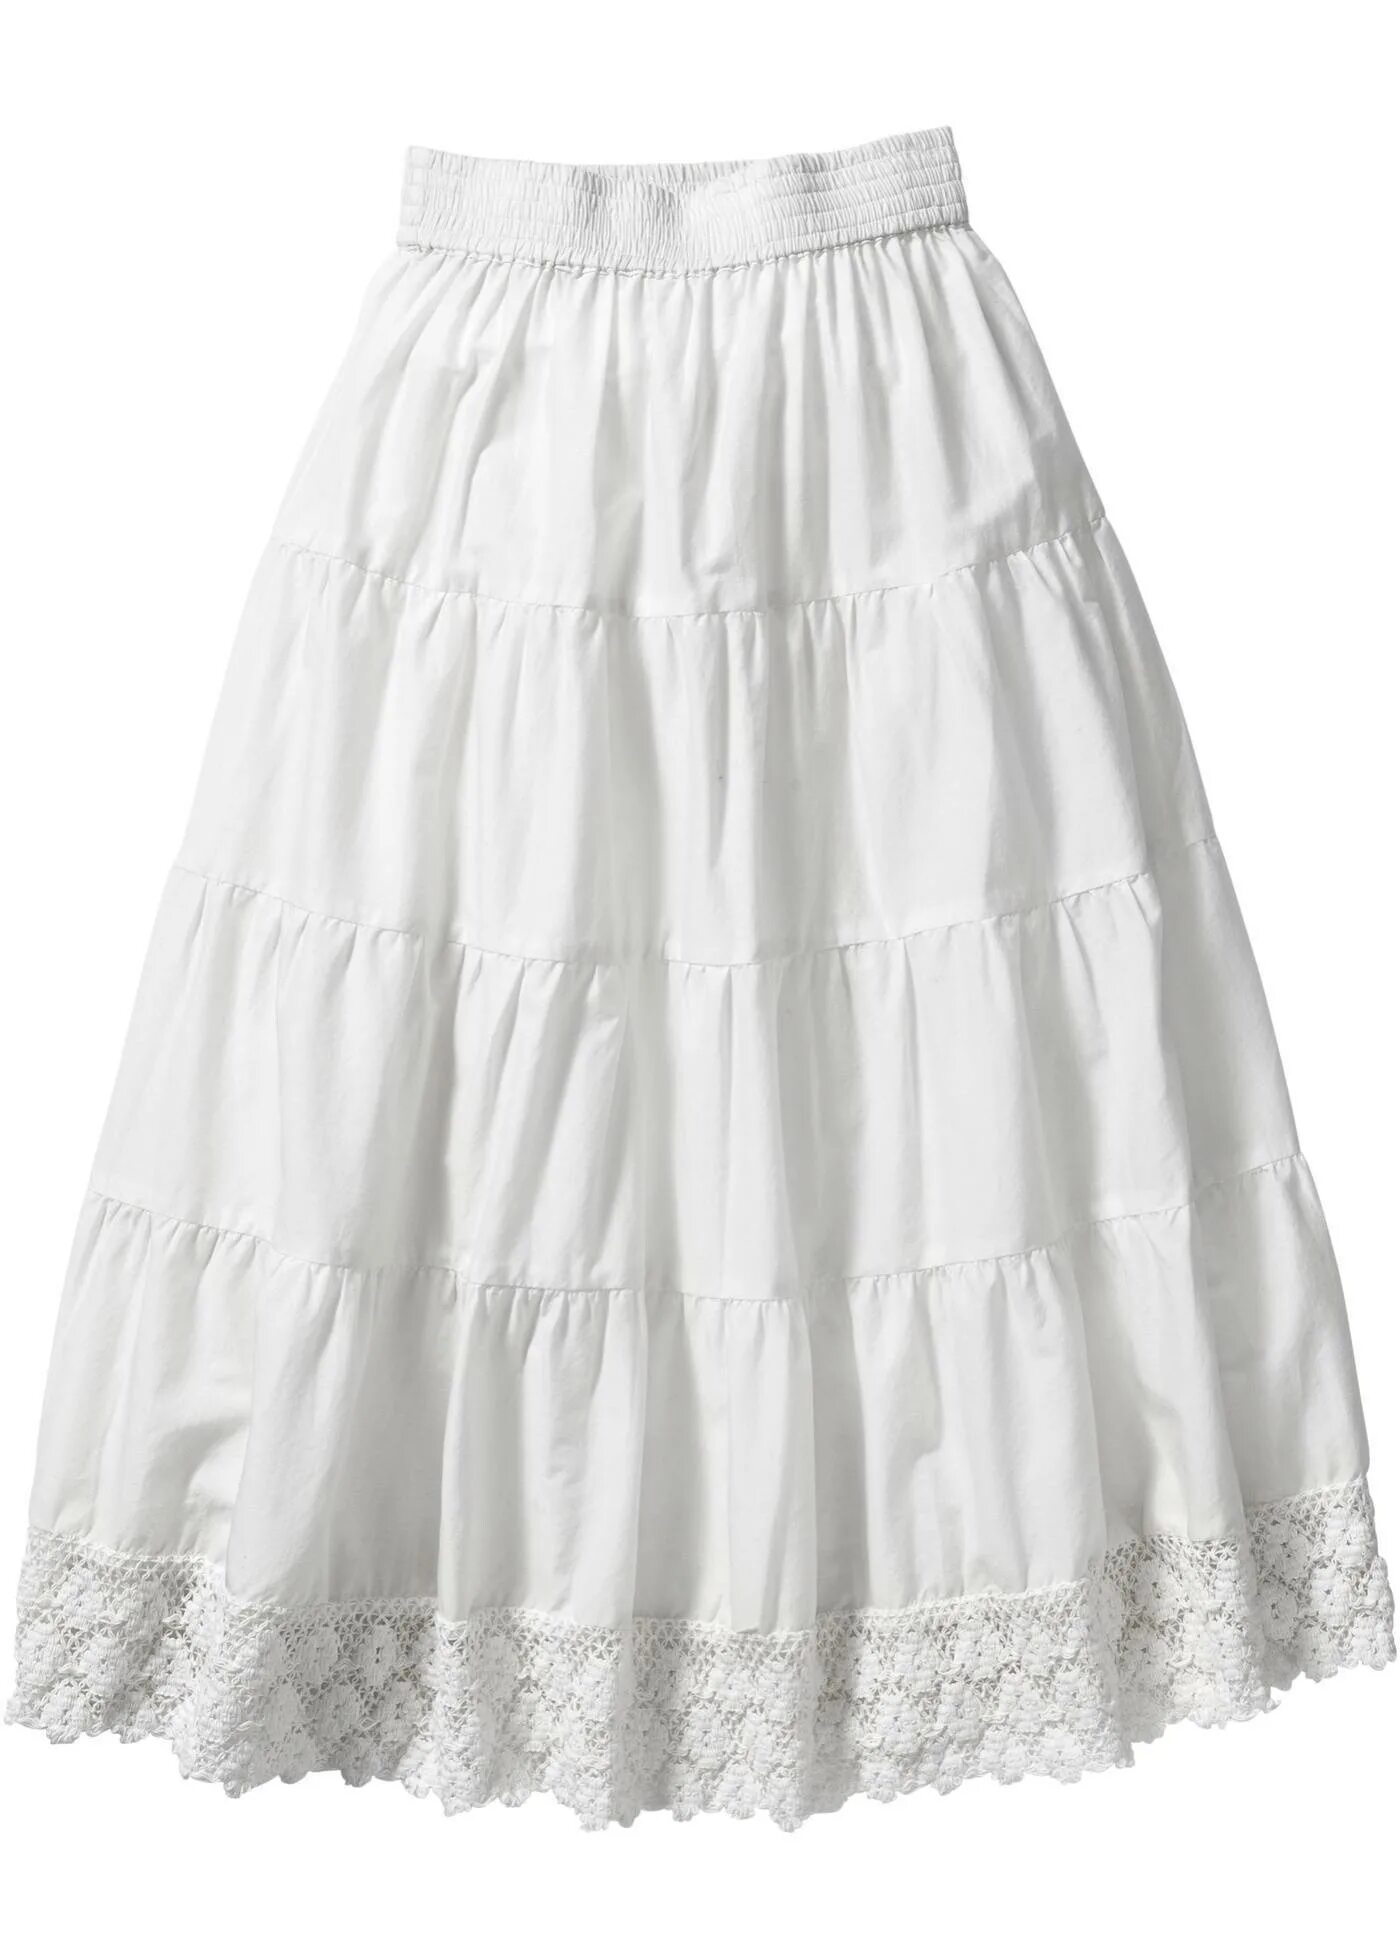 Белая юбка. Хлопчатобумажная юбка. Белая юбка для девочки. Белая летняя юбка.